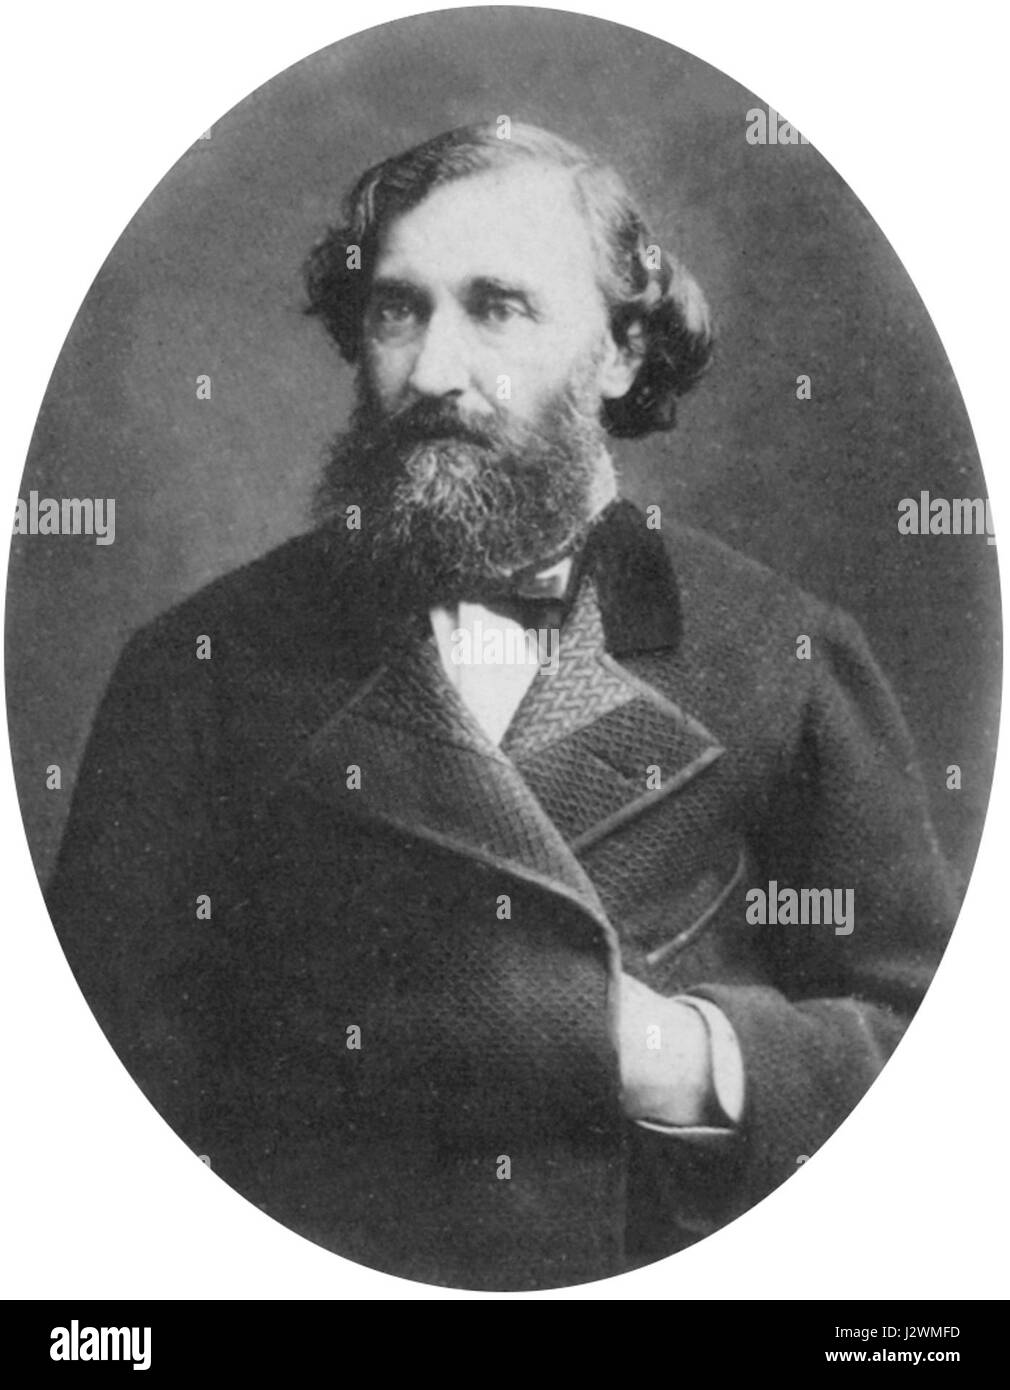 Bartolome mitre circa nel 1870 Foto Stock